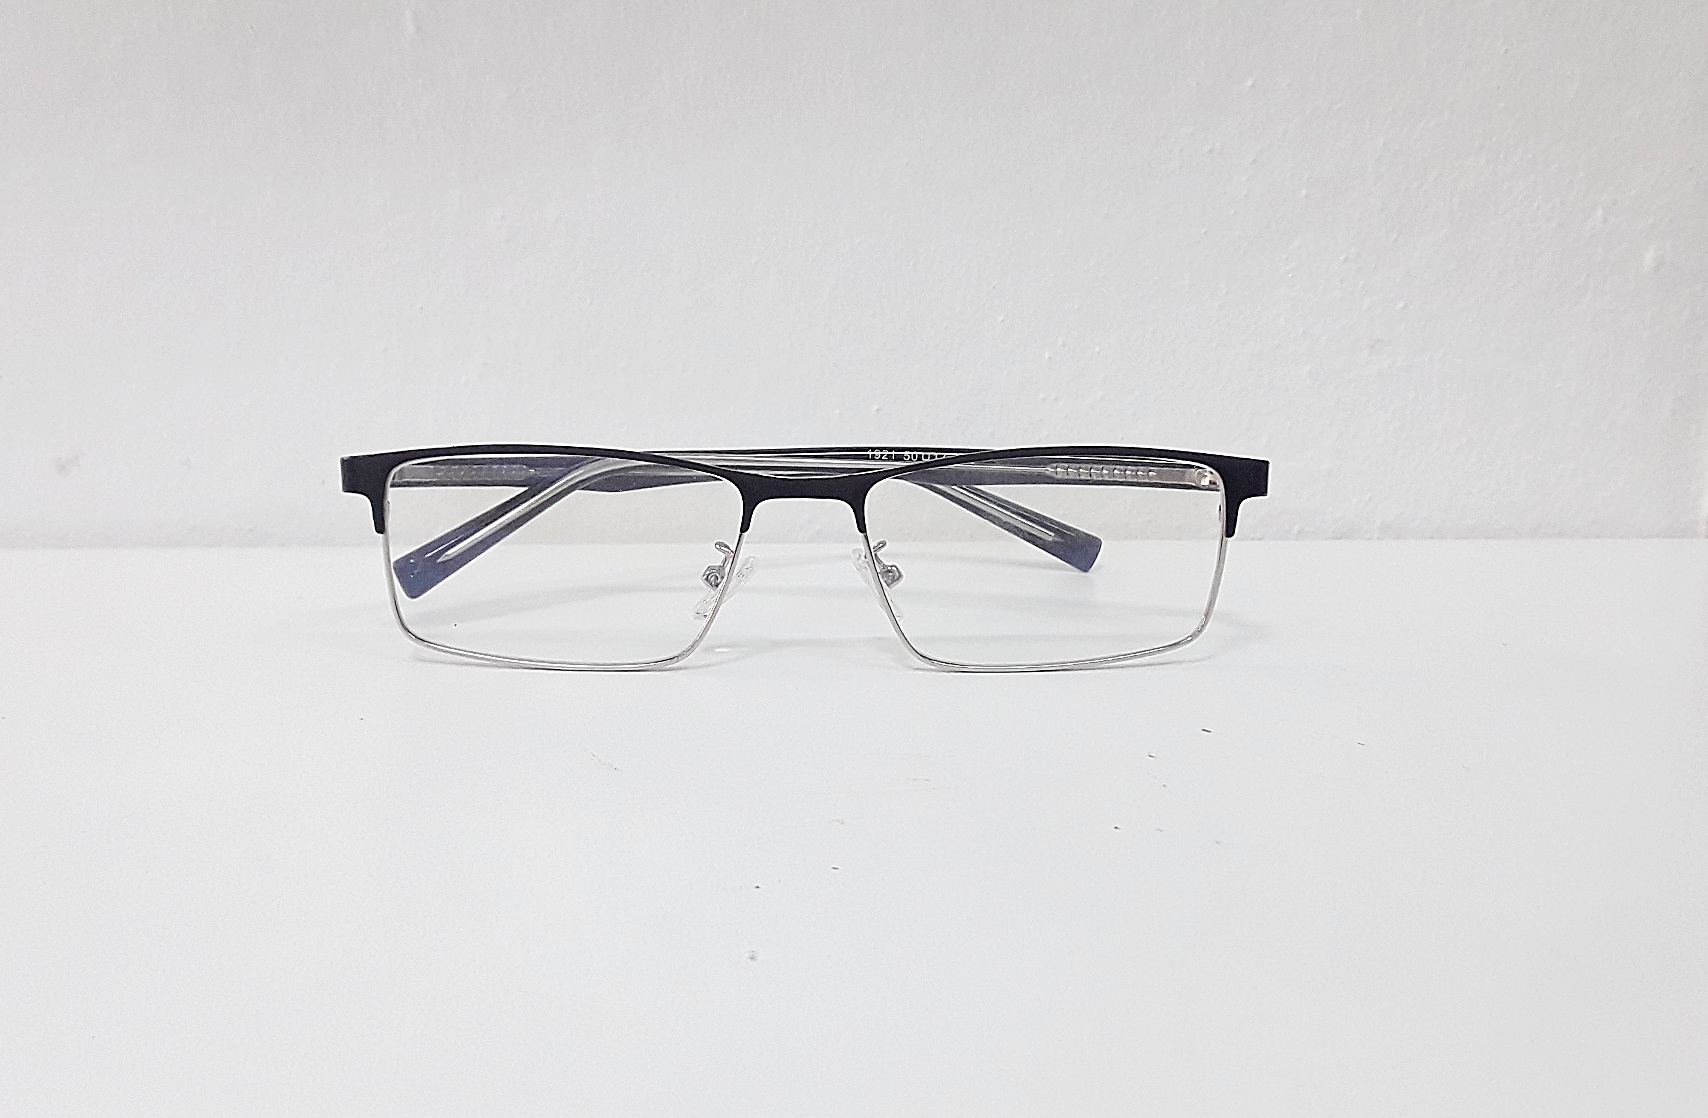 แว่นสายตายาว แว่นอ่านหนังสือ แว่นสายตา ตัดแว่น กรอบพร้อมเลนส์ ออโต้ปรับแสง ออโต้เปลี่ยนสีอัตโนมัติ แว่นตัด โดยร้านแว่น 1921ดำเงิน